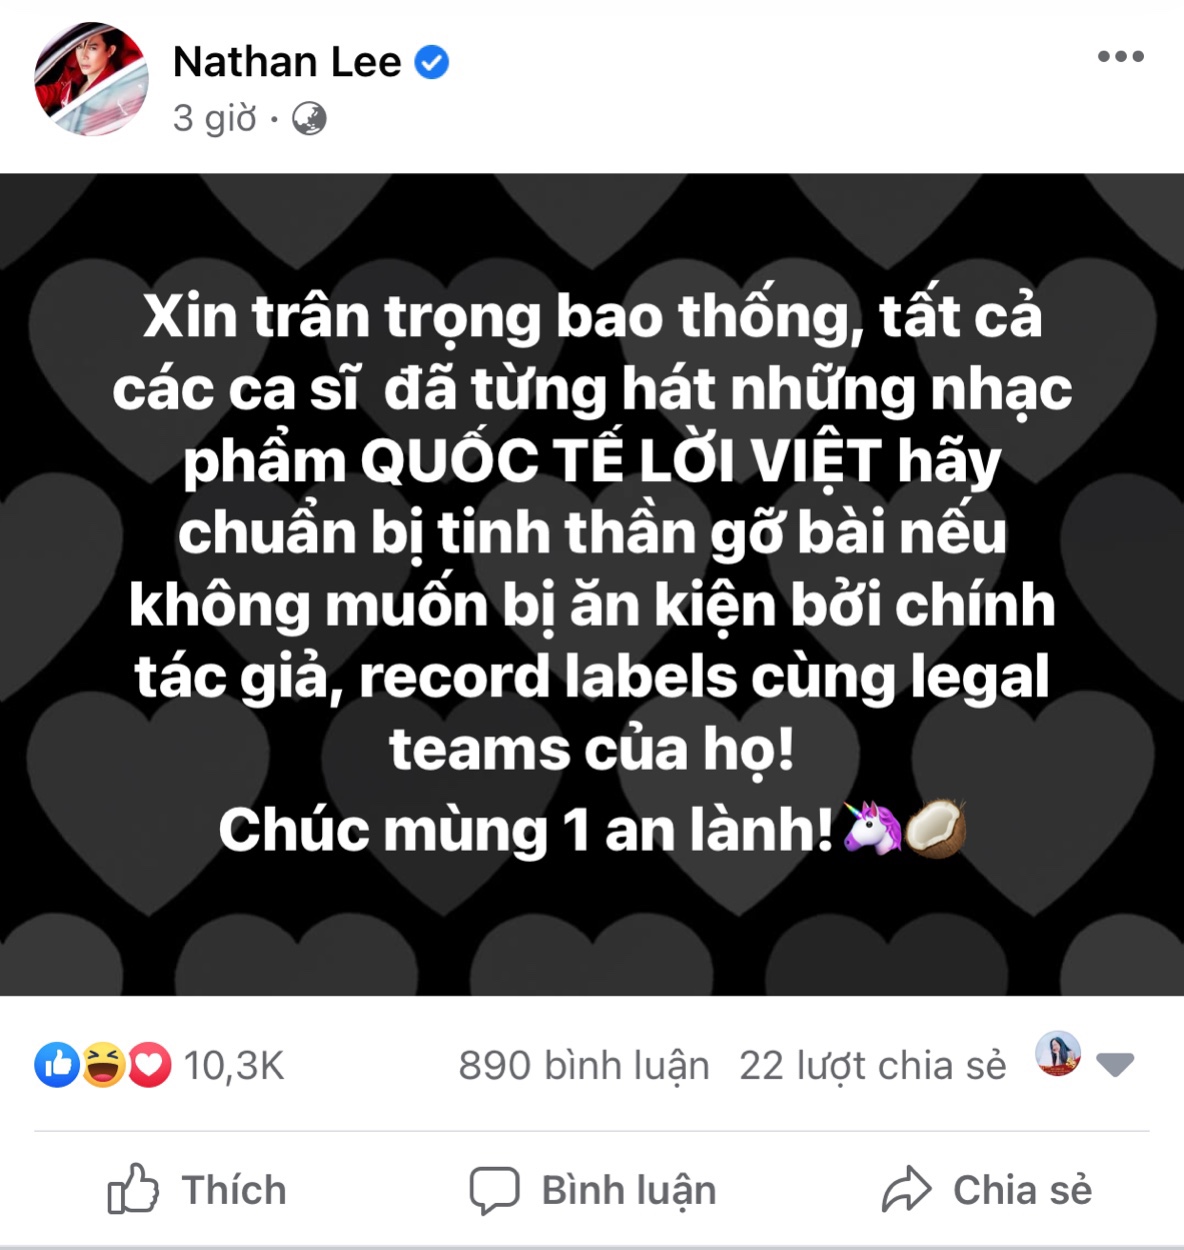 Bài viết của Nathan Lee gây xôn xao cộng đồng mạng